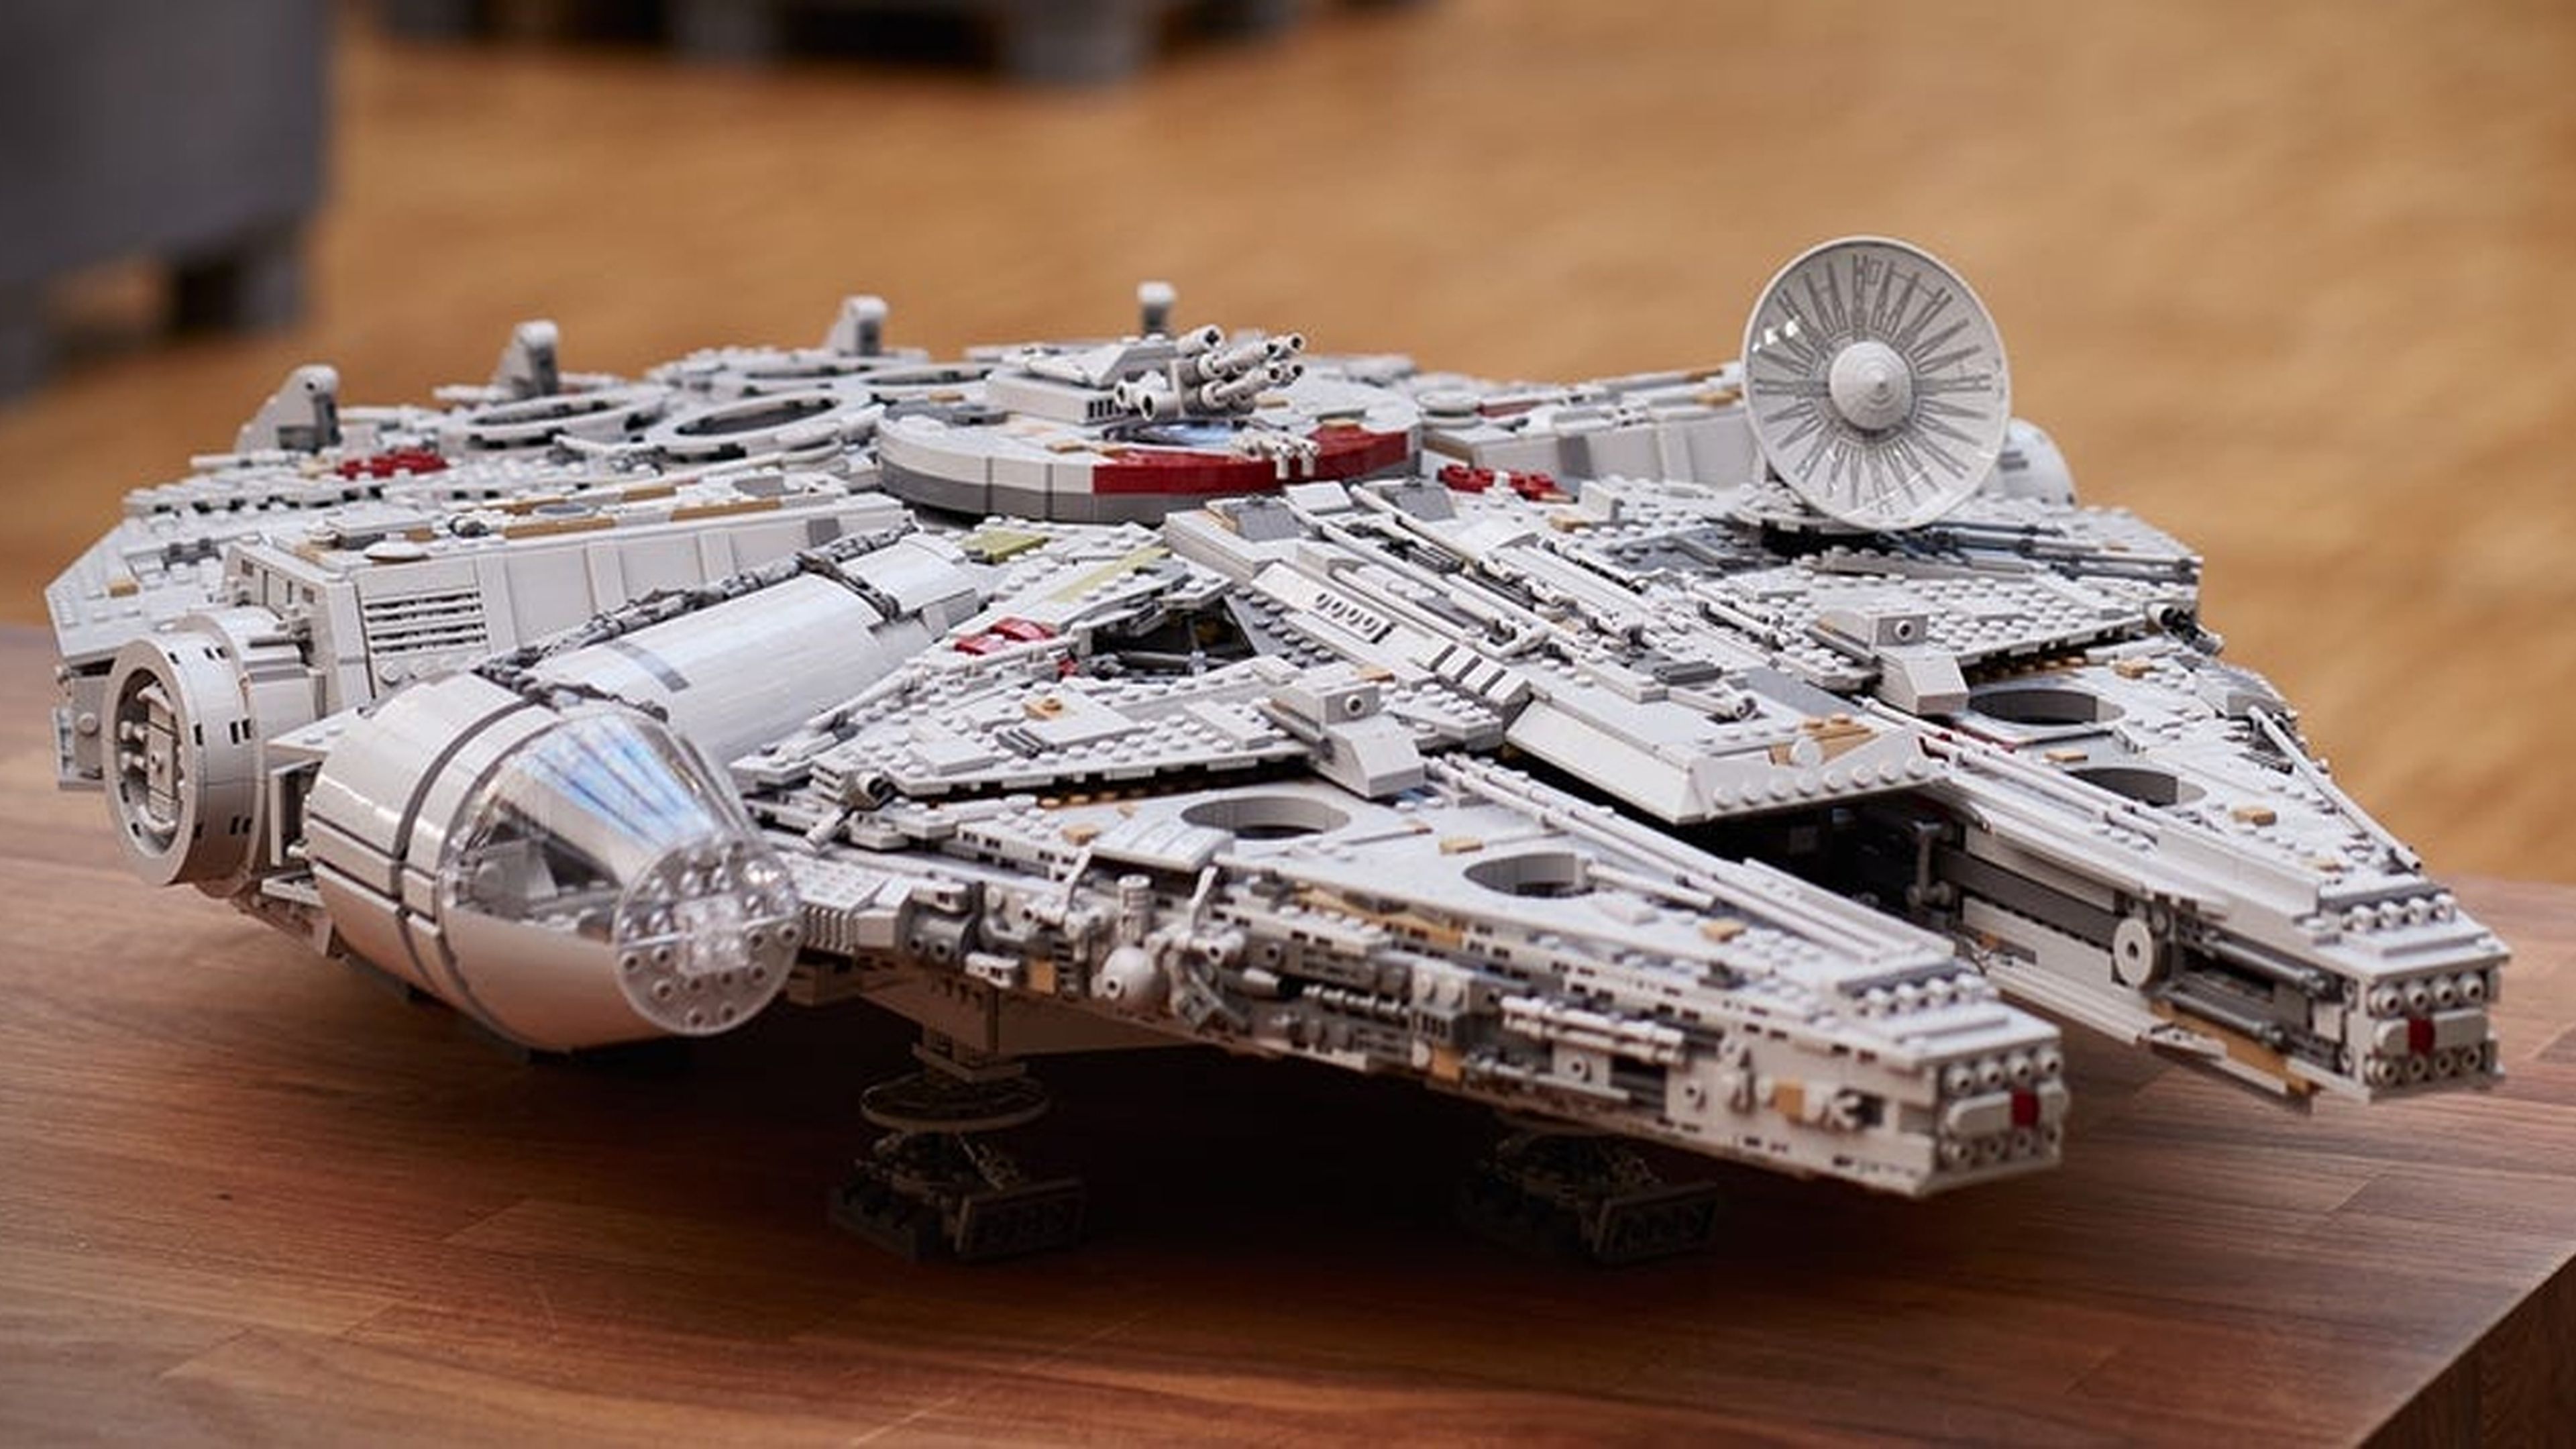 Este Halcón Milenario de Lego tiene más de 7.500 piezas y está